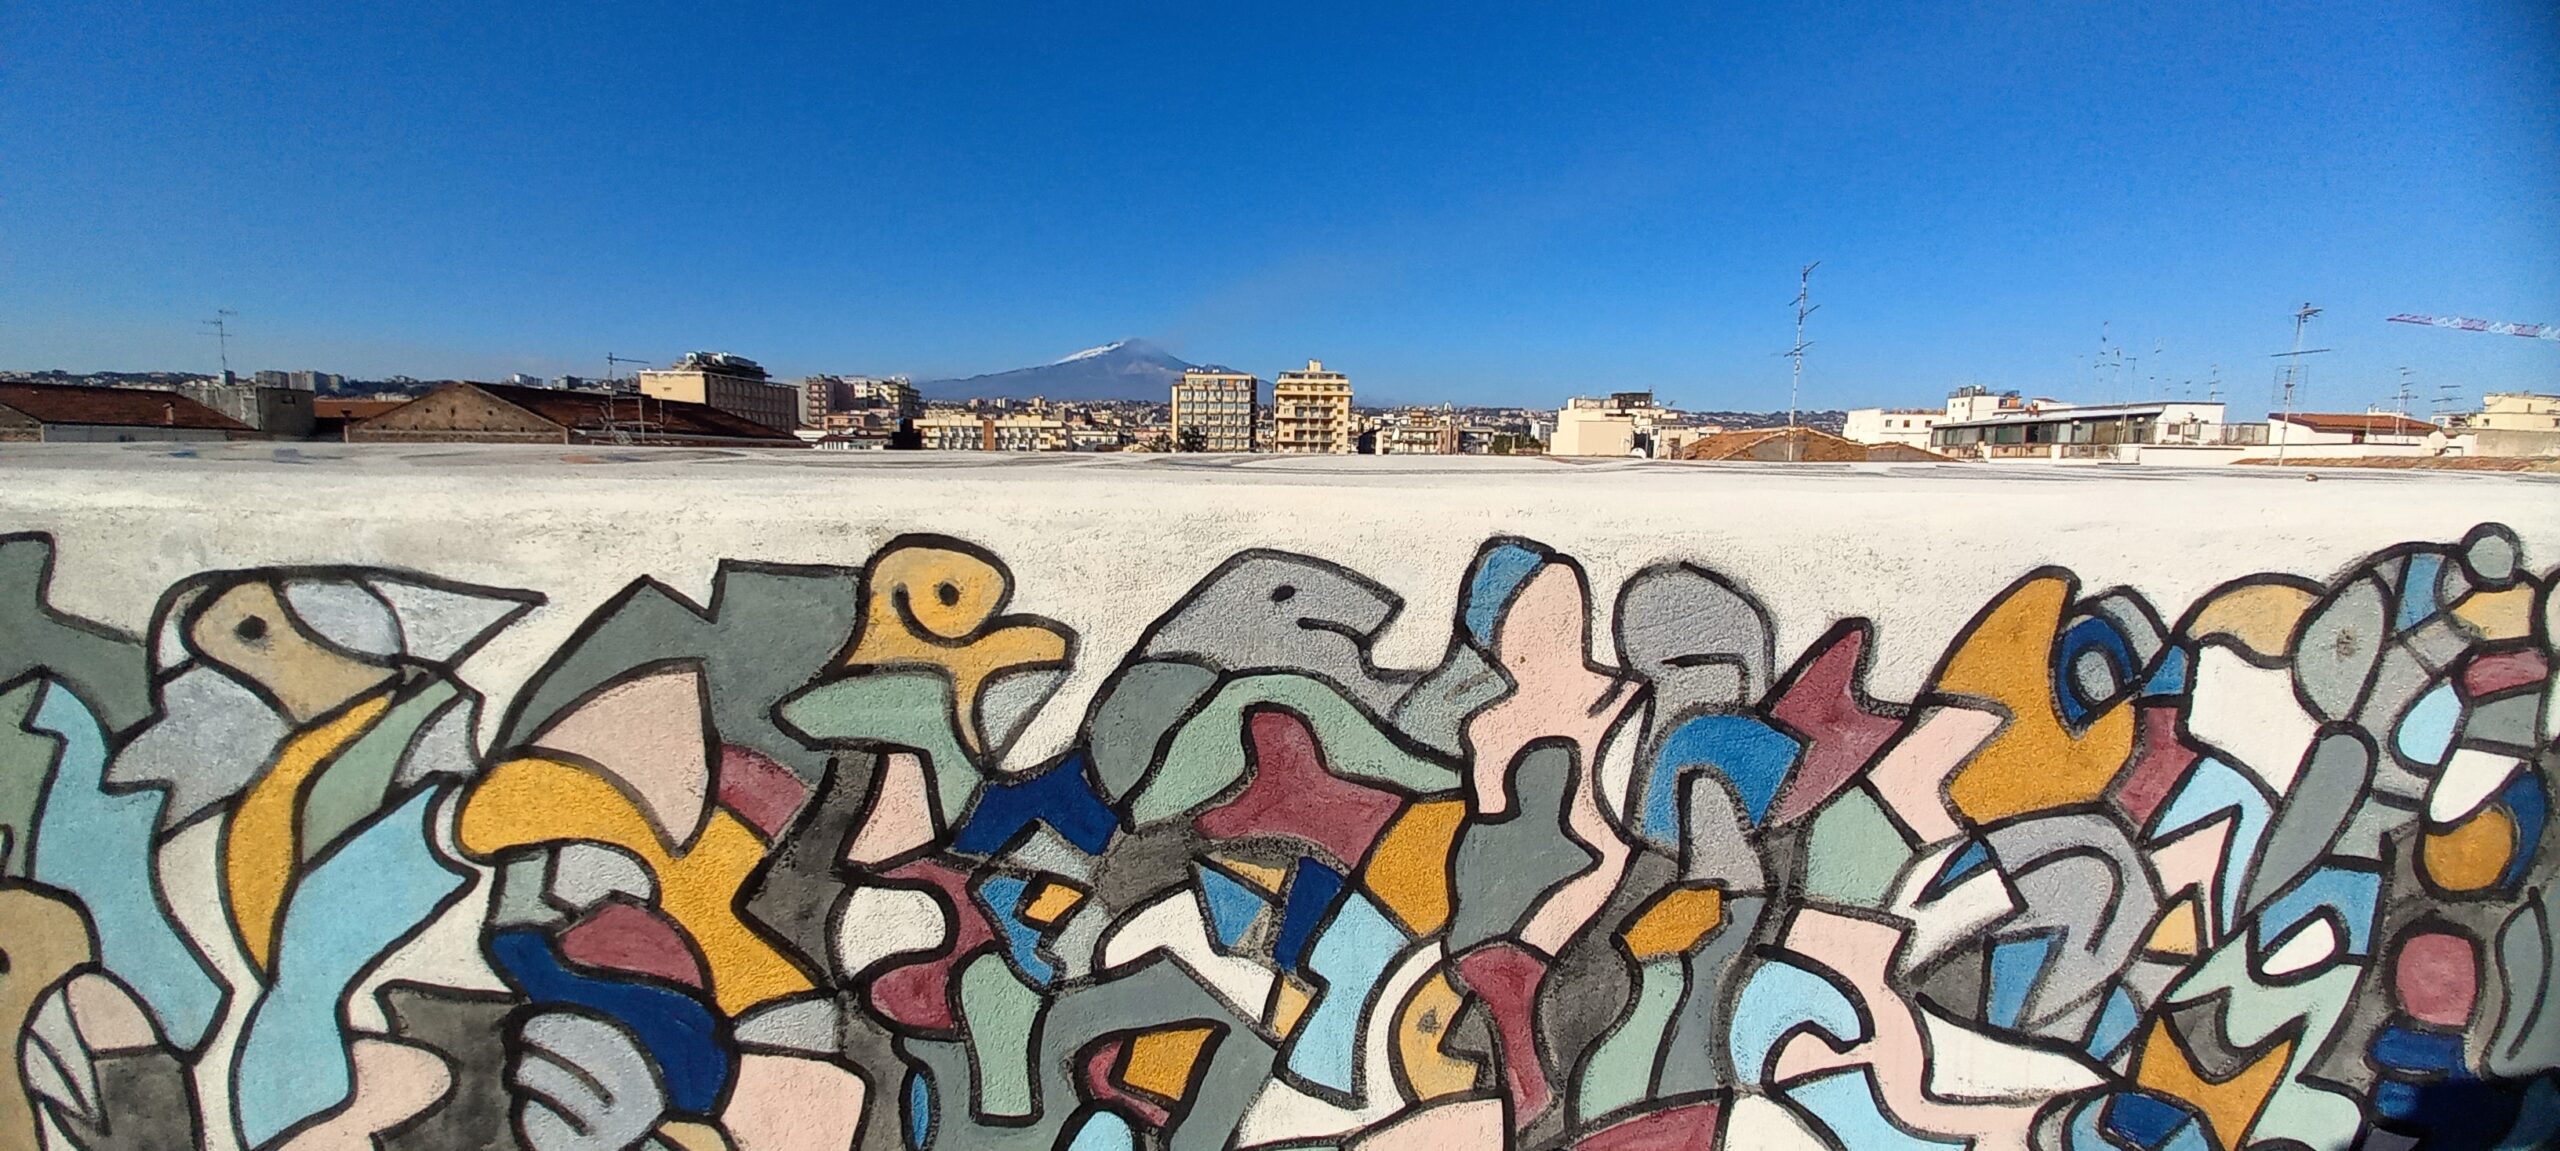 algoritmi di pace cortile delle nevi catania visionaria mural art 